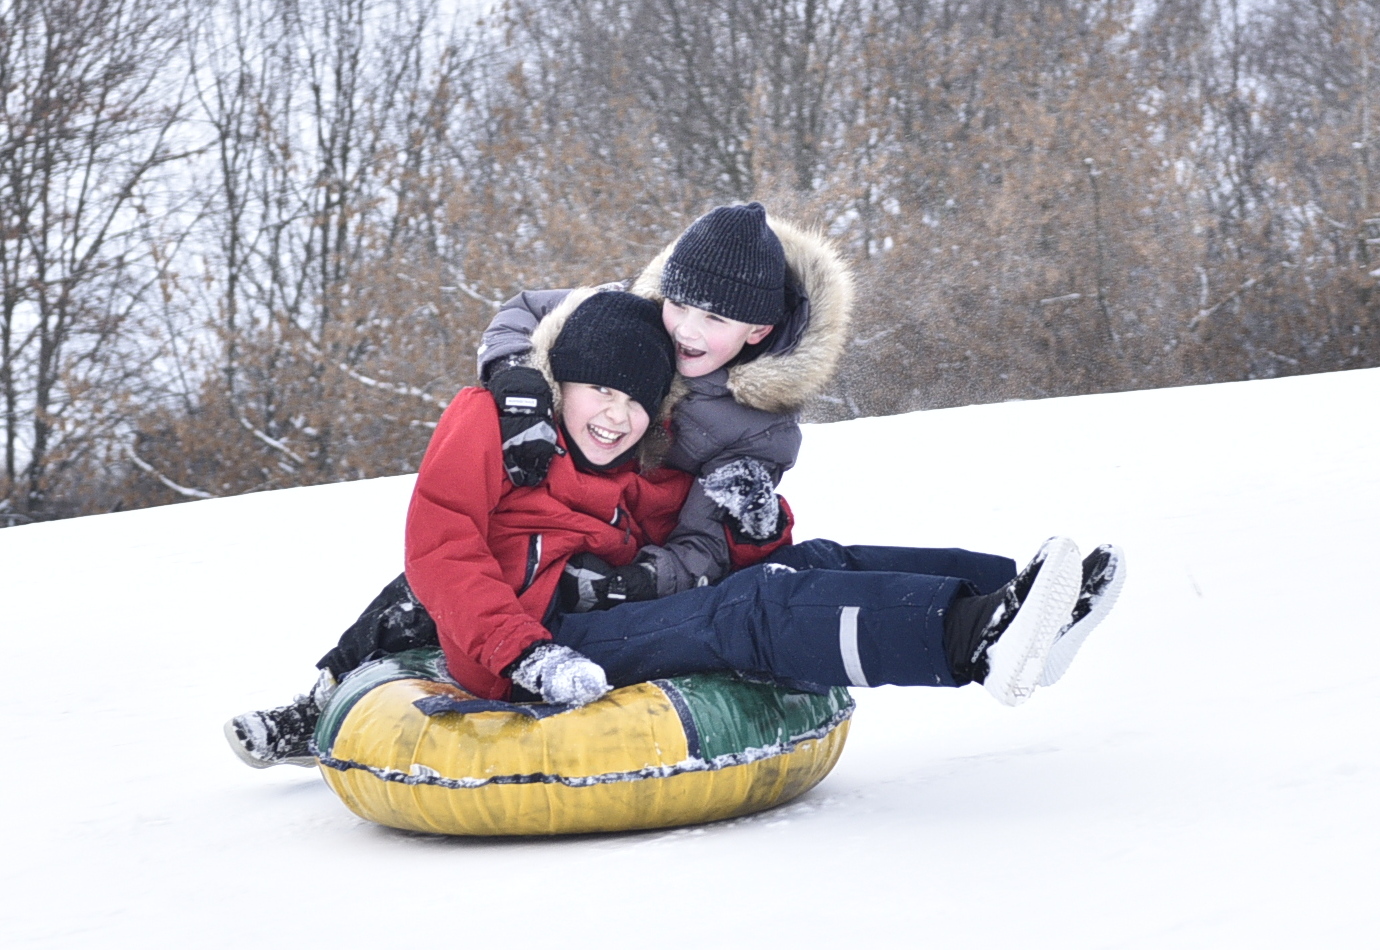 Более 100 дополнительных площадок для активного зимнего отдыха откроются в парках Москвы